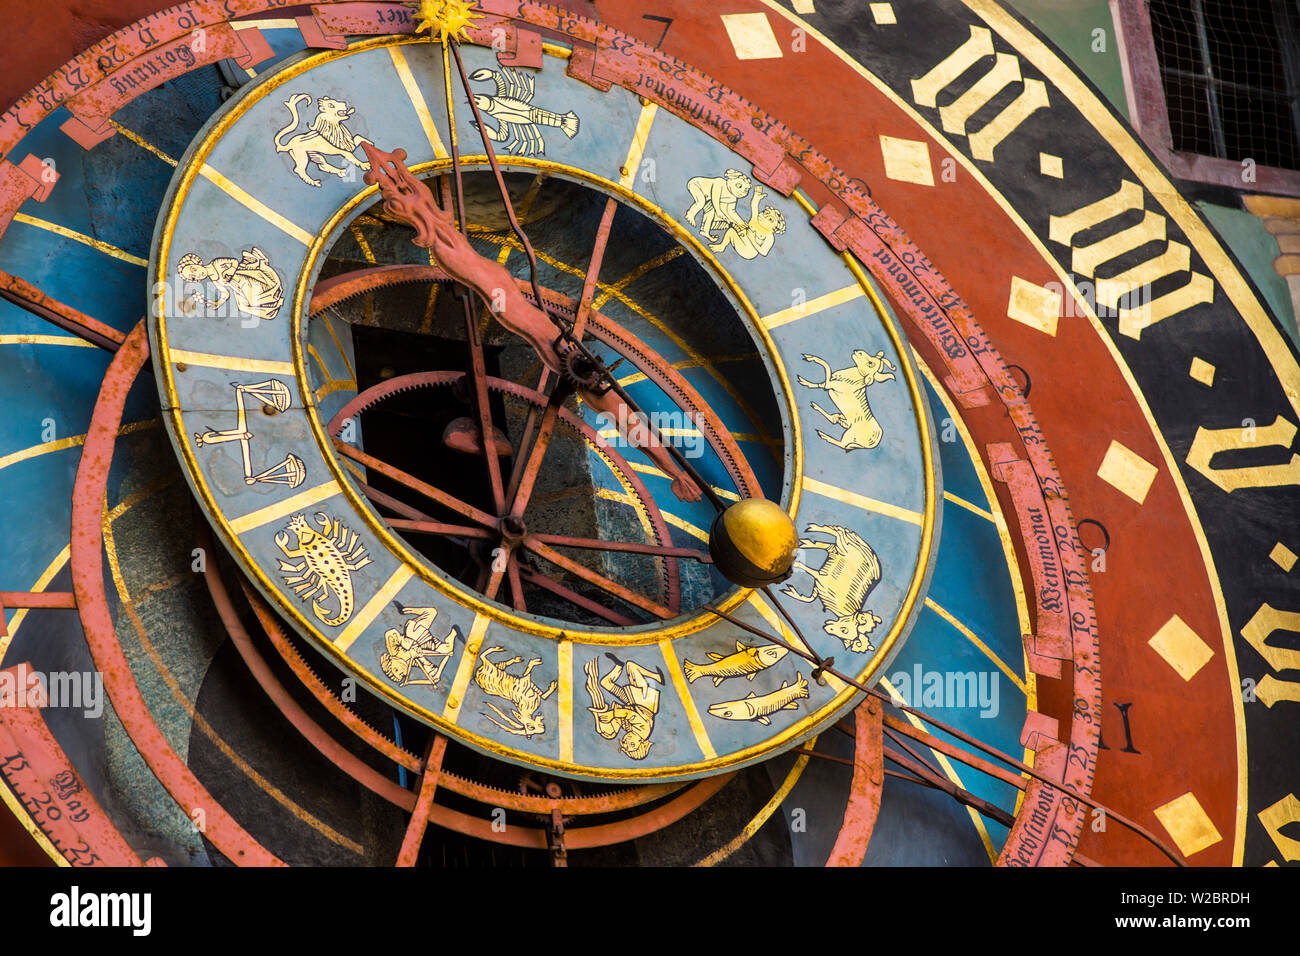 Die astronomische Uhr auf dem Zytglogge, Kramgasse, Bern (Bern), Berner  Oberland, Schweiz Stockfotografie - Alamy